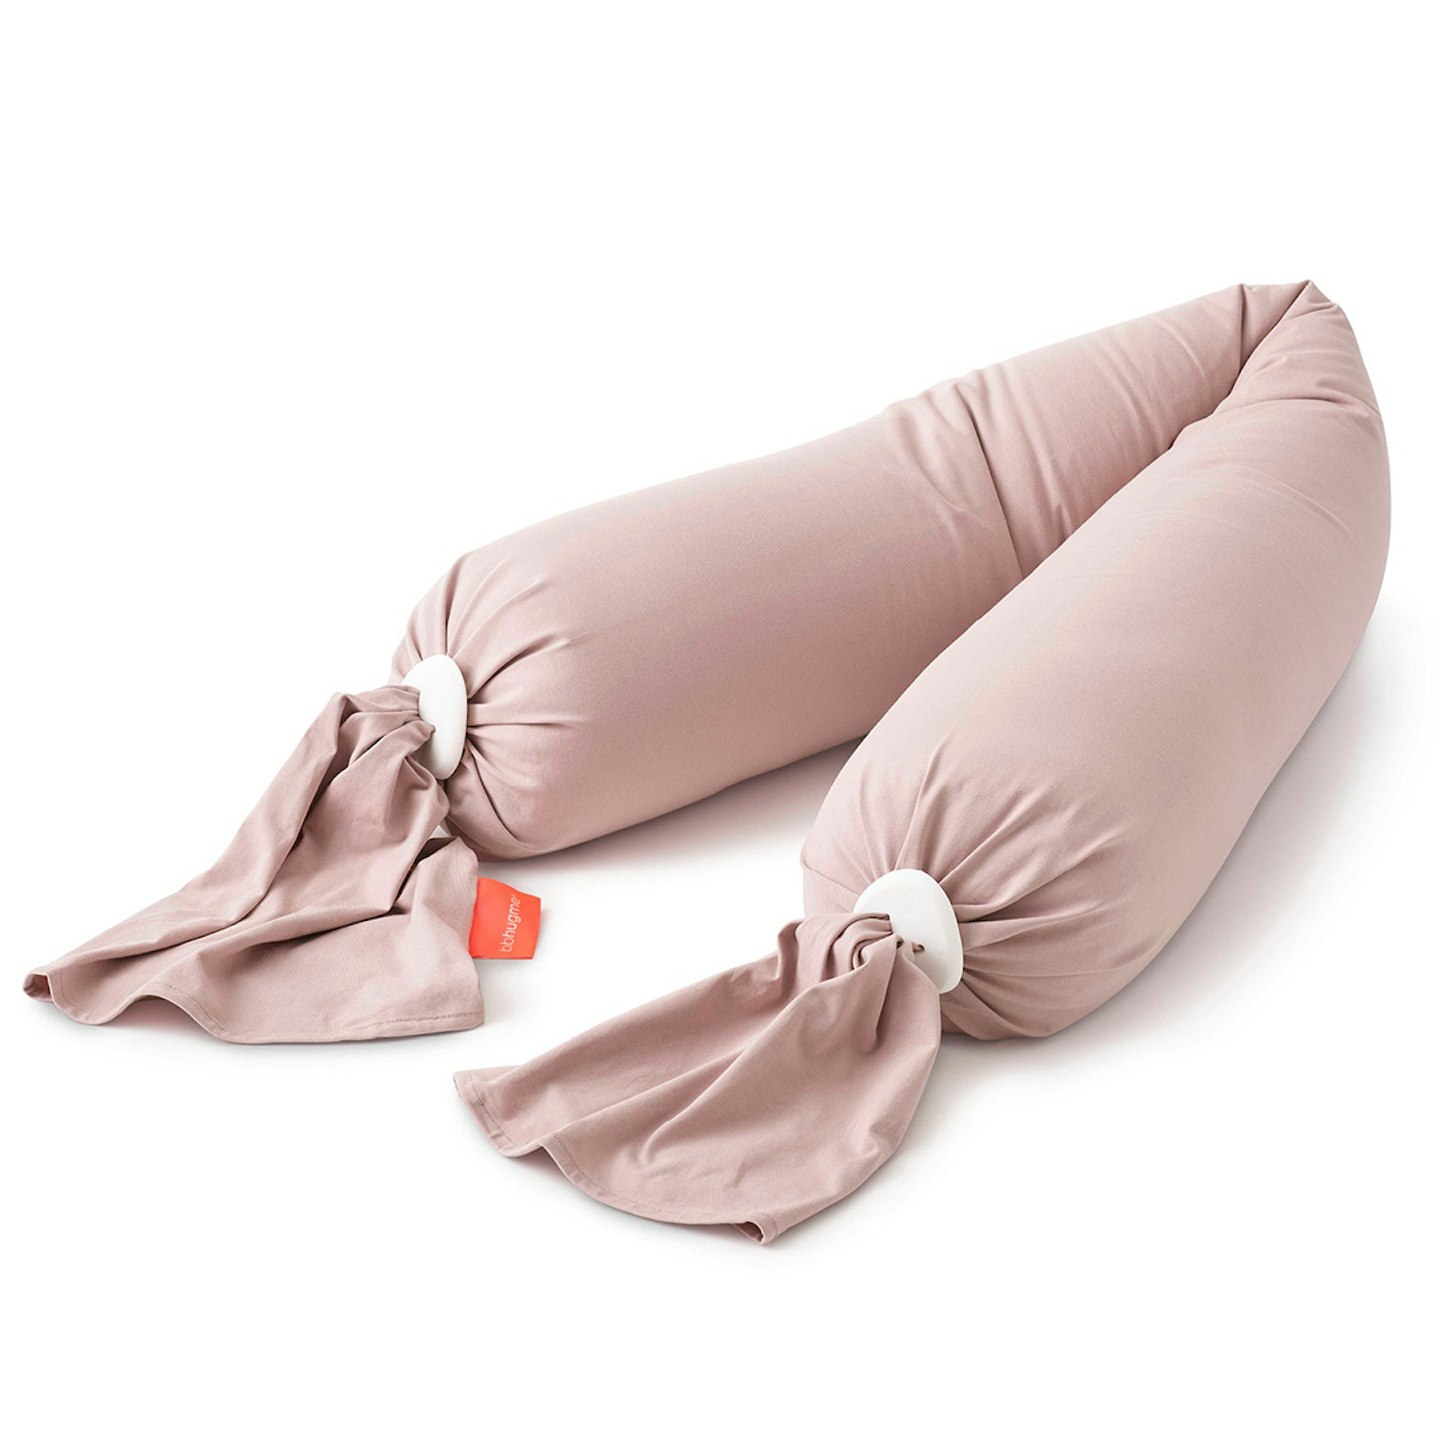 bbhugme Pregnancy Pillow